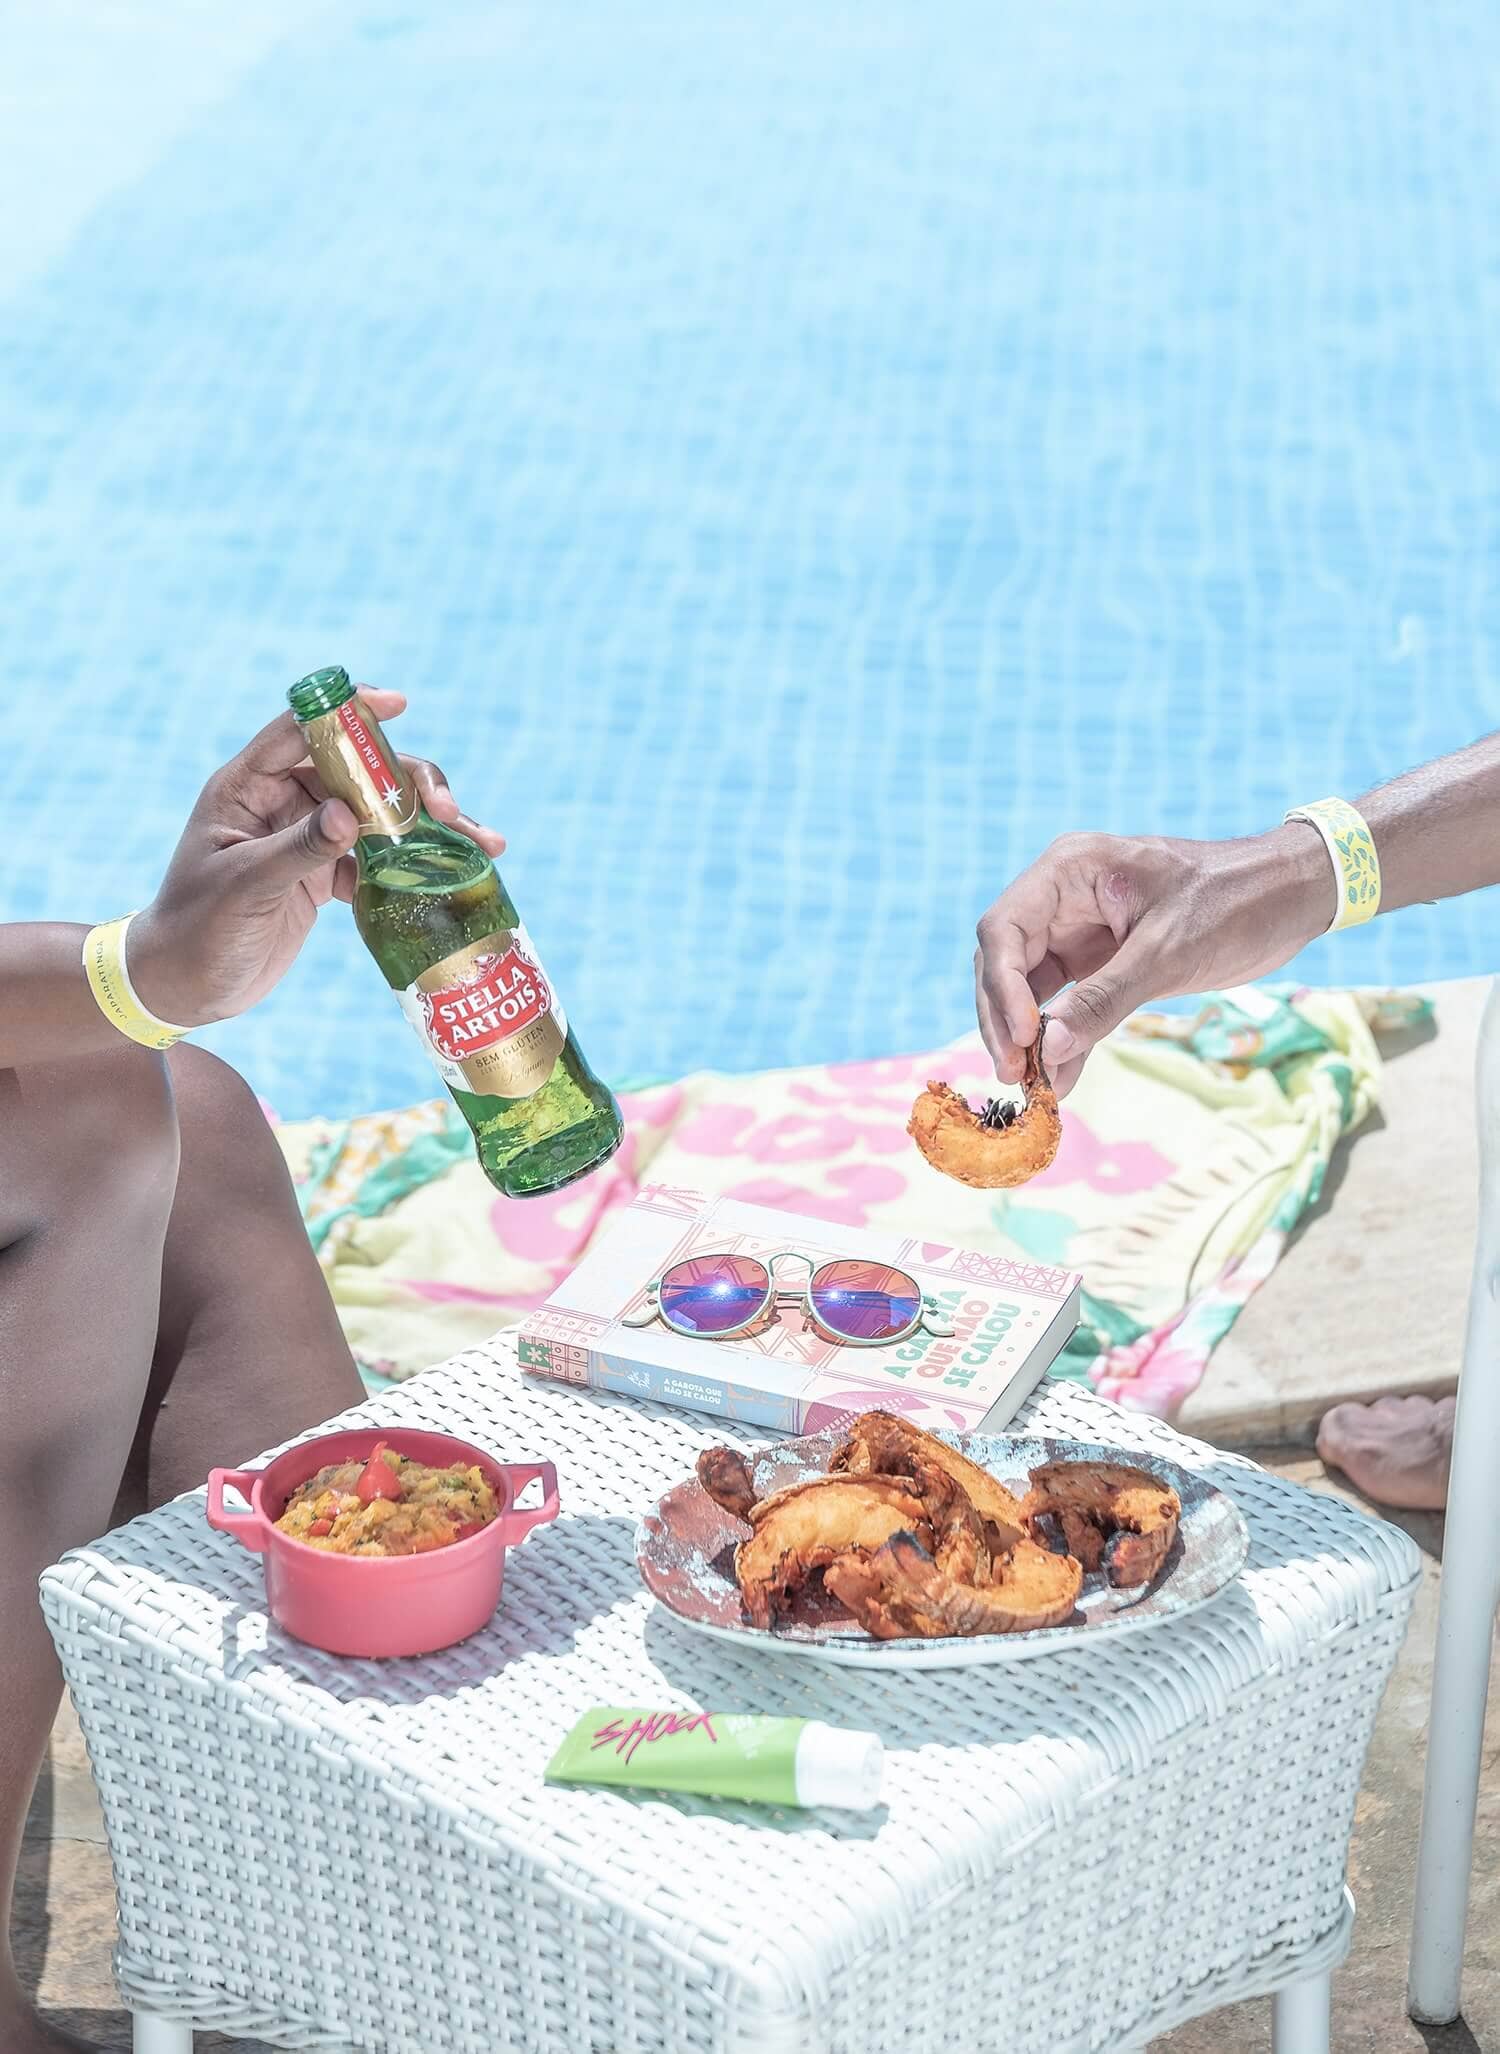 Na imagem é possível ver parte de duas pessoas desfrutando do all inclusive premium do Japaratinga Lounge Resort, resort no Nordeste do Brasil. Há petiscos de camarão e uma cerveja long neck, ao fundo vê-se uma piscina.